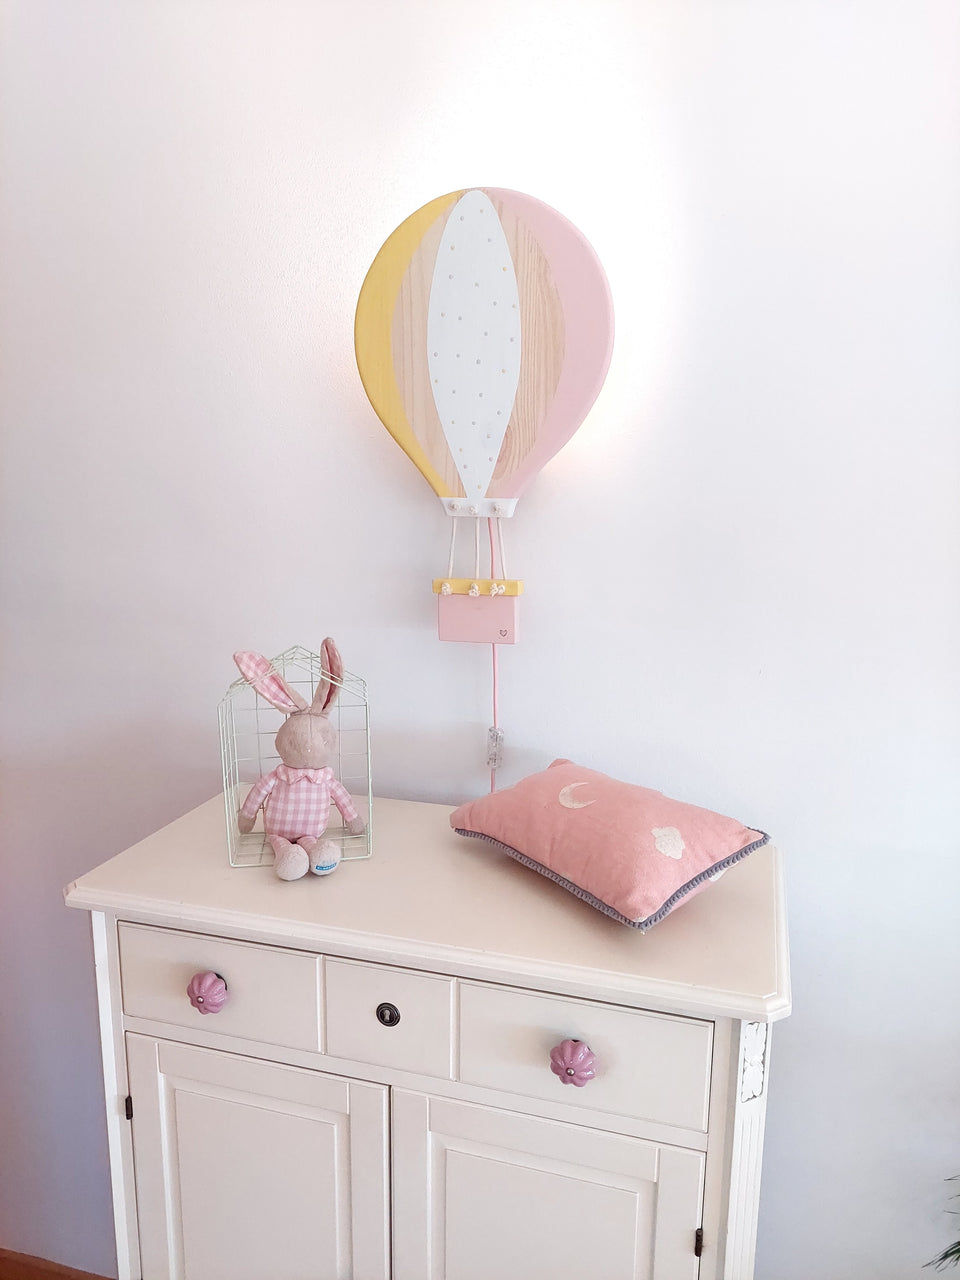 Candeeiro parede Balão Ar Quente Amarelo e rosa - Yellow and pink Hot Air Balloon wall lamp